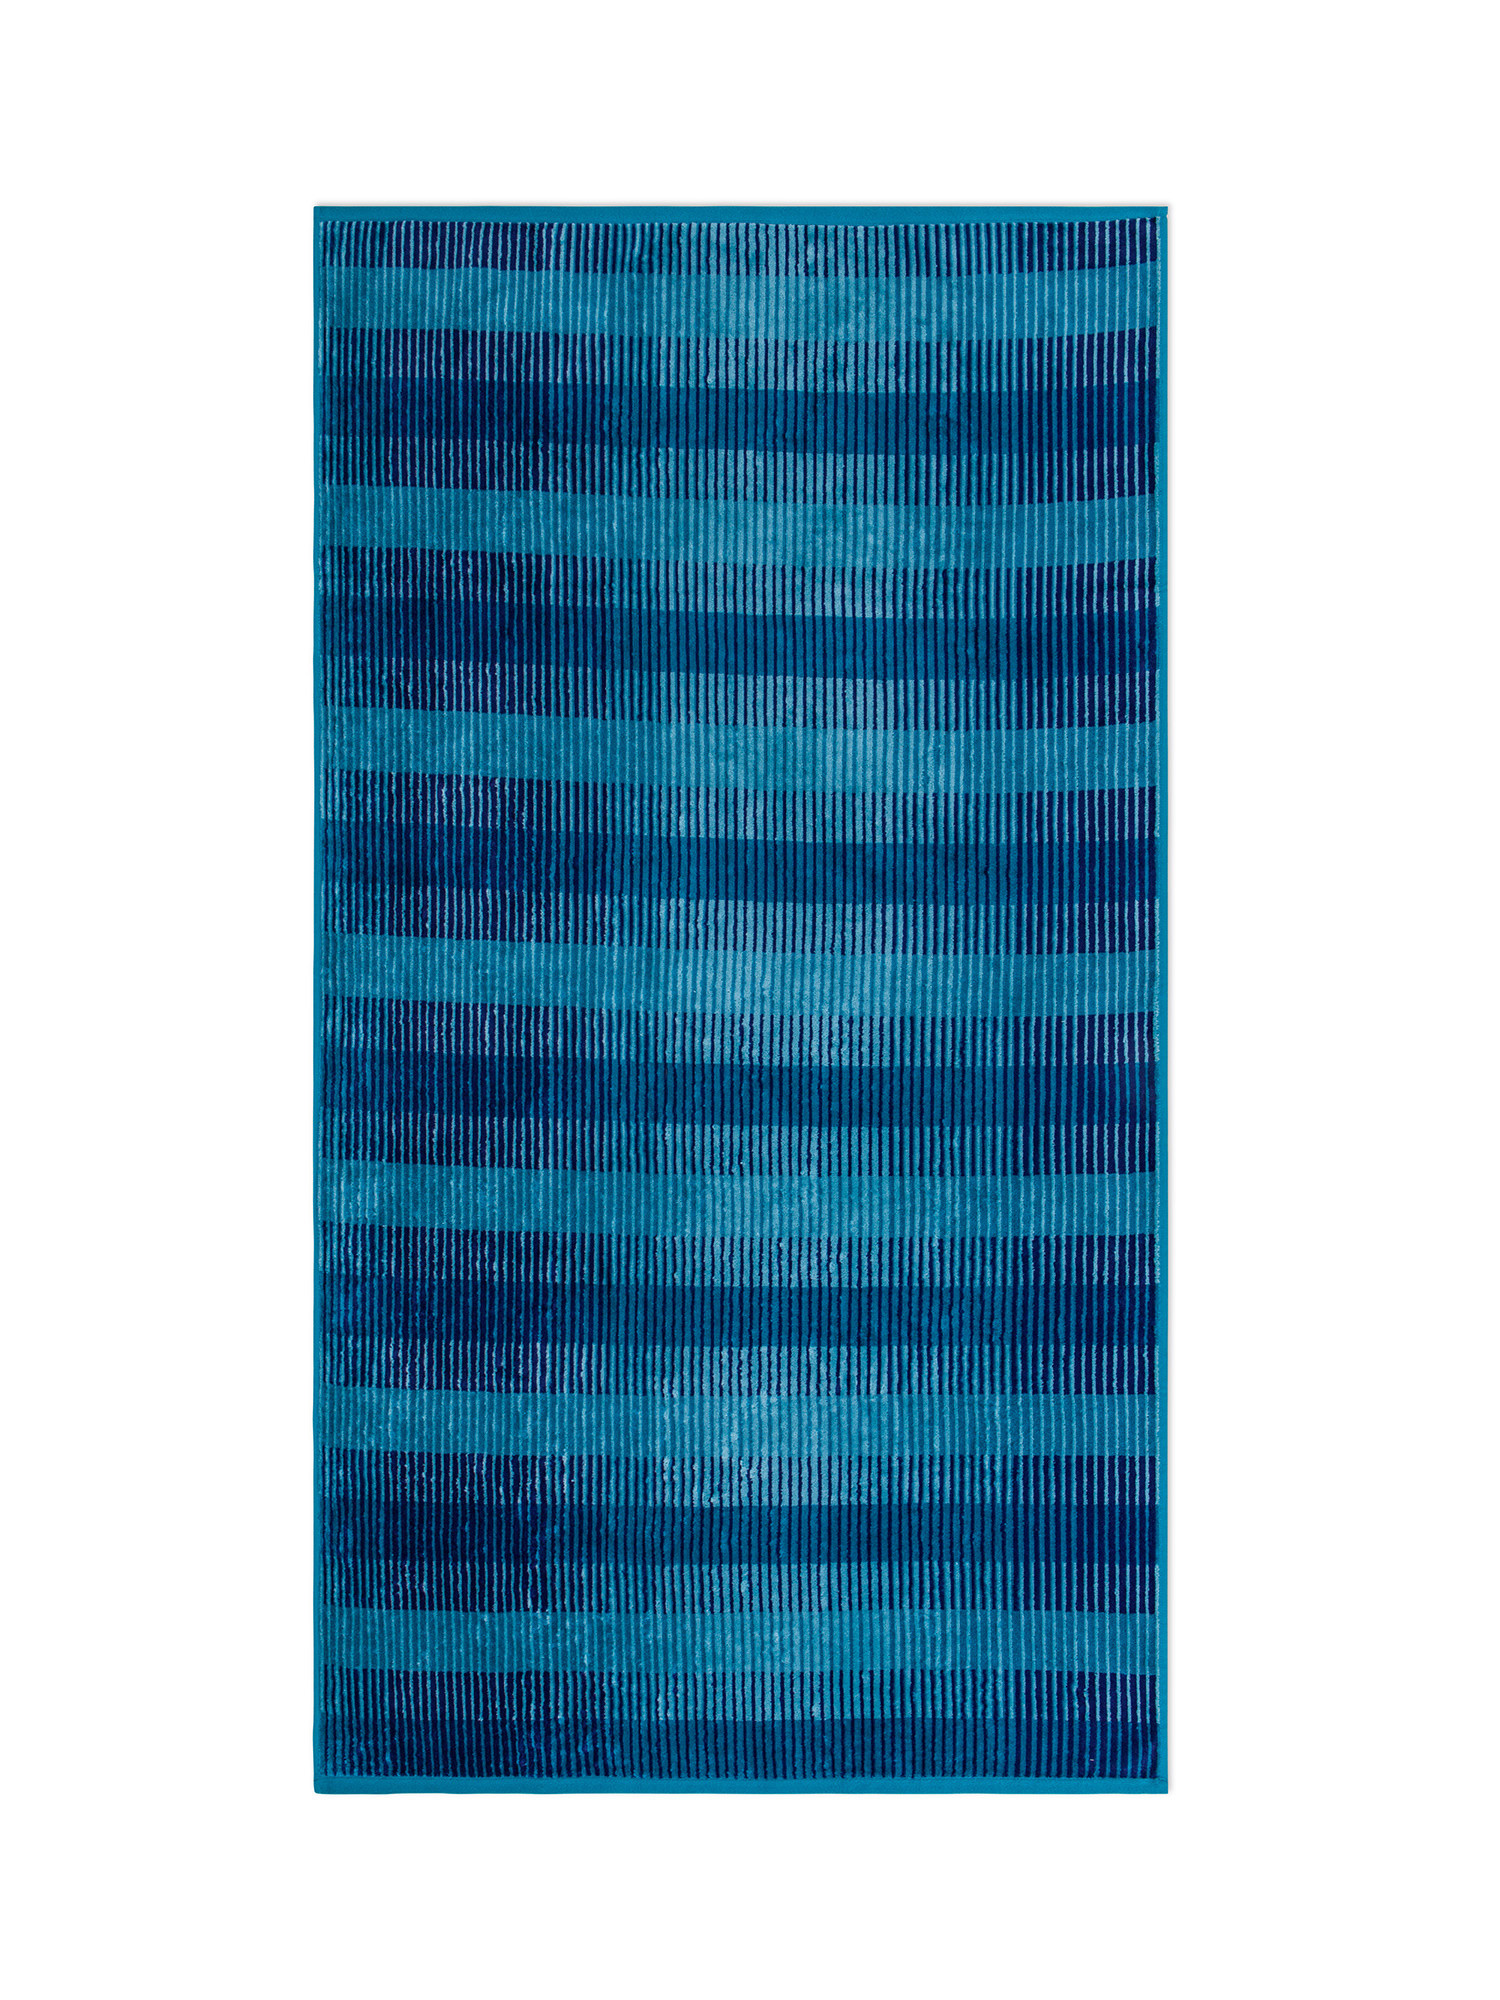 Telo mare spugna di cotone velour righe a righe, Blu, large image number 0